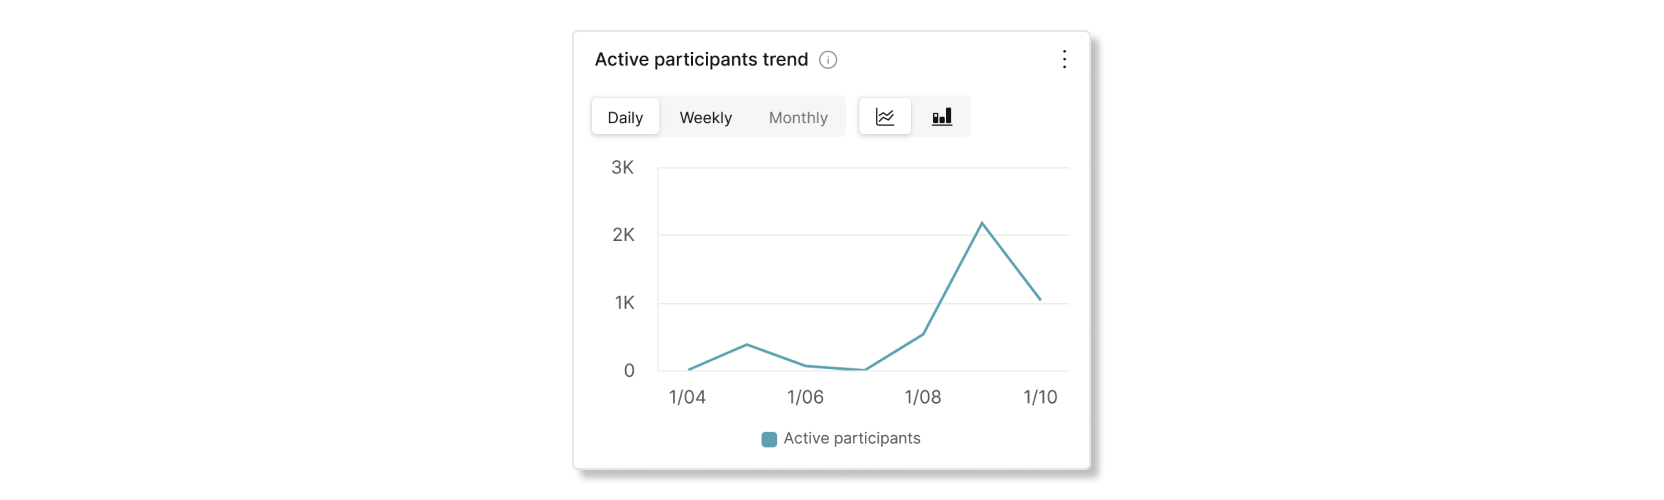 Gráfico de tendencias de participantes activos en el análisis de Slido Control Hub